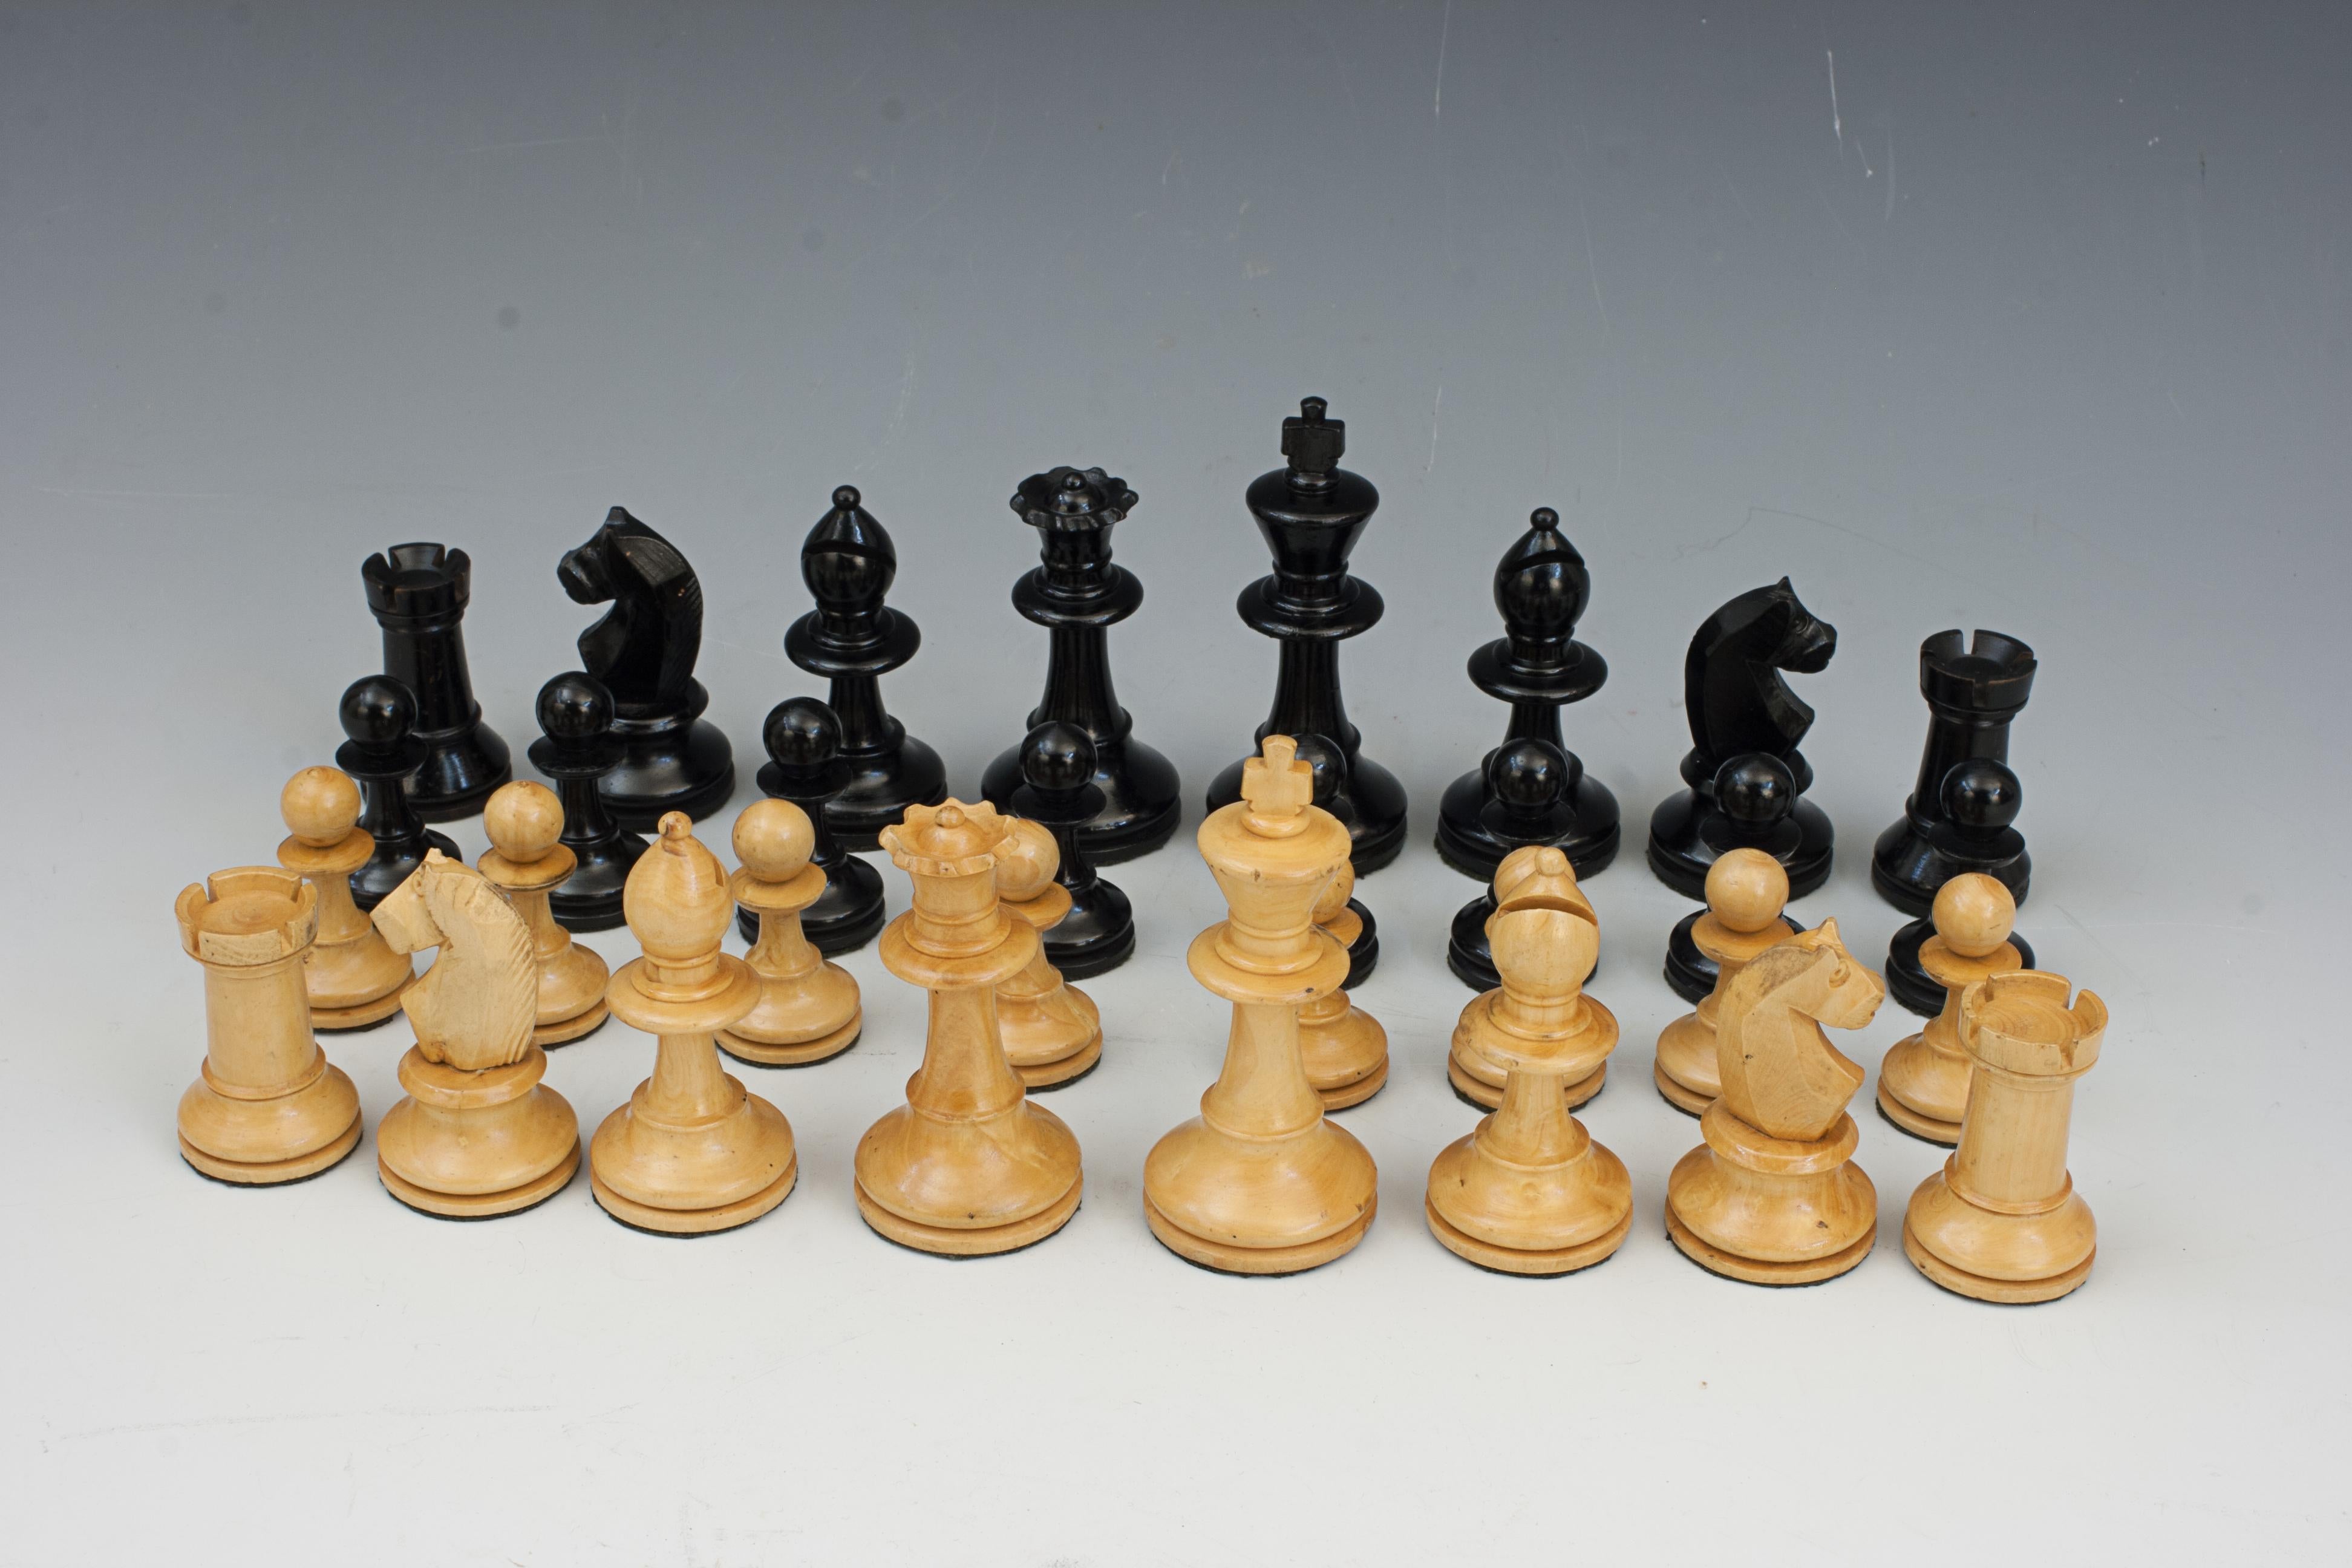 Antike Schachfiguren im Staunton-Stil.
Ein Schachspiel im Staunton-Stil mit hölzernen Schachfiguren mit breiten, gedrehten Sockeln für zusätzliche Stabilität, und die Unterseite jeder Figur ist mit Filz bedeckt, damit die Figuren leichter über das